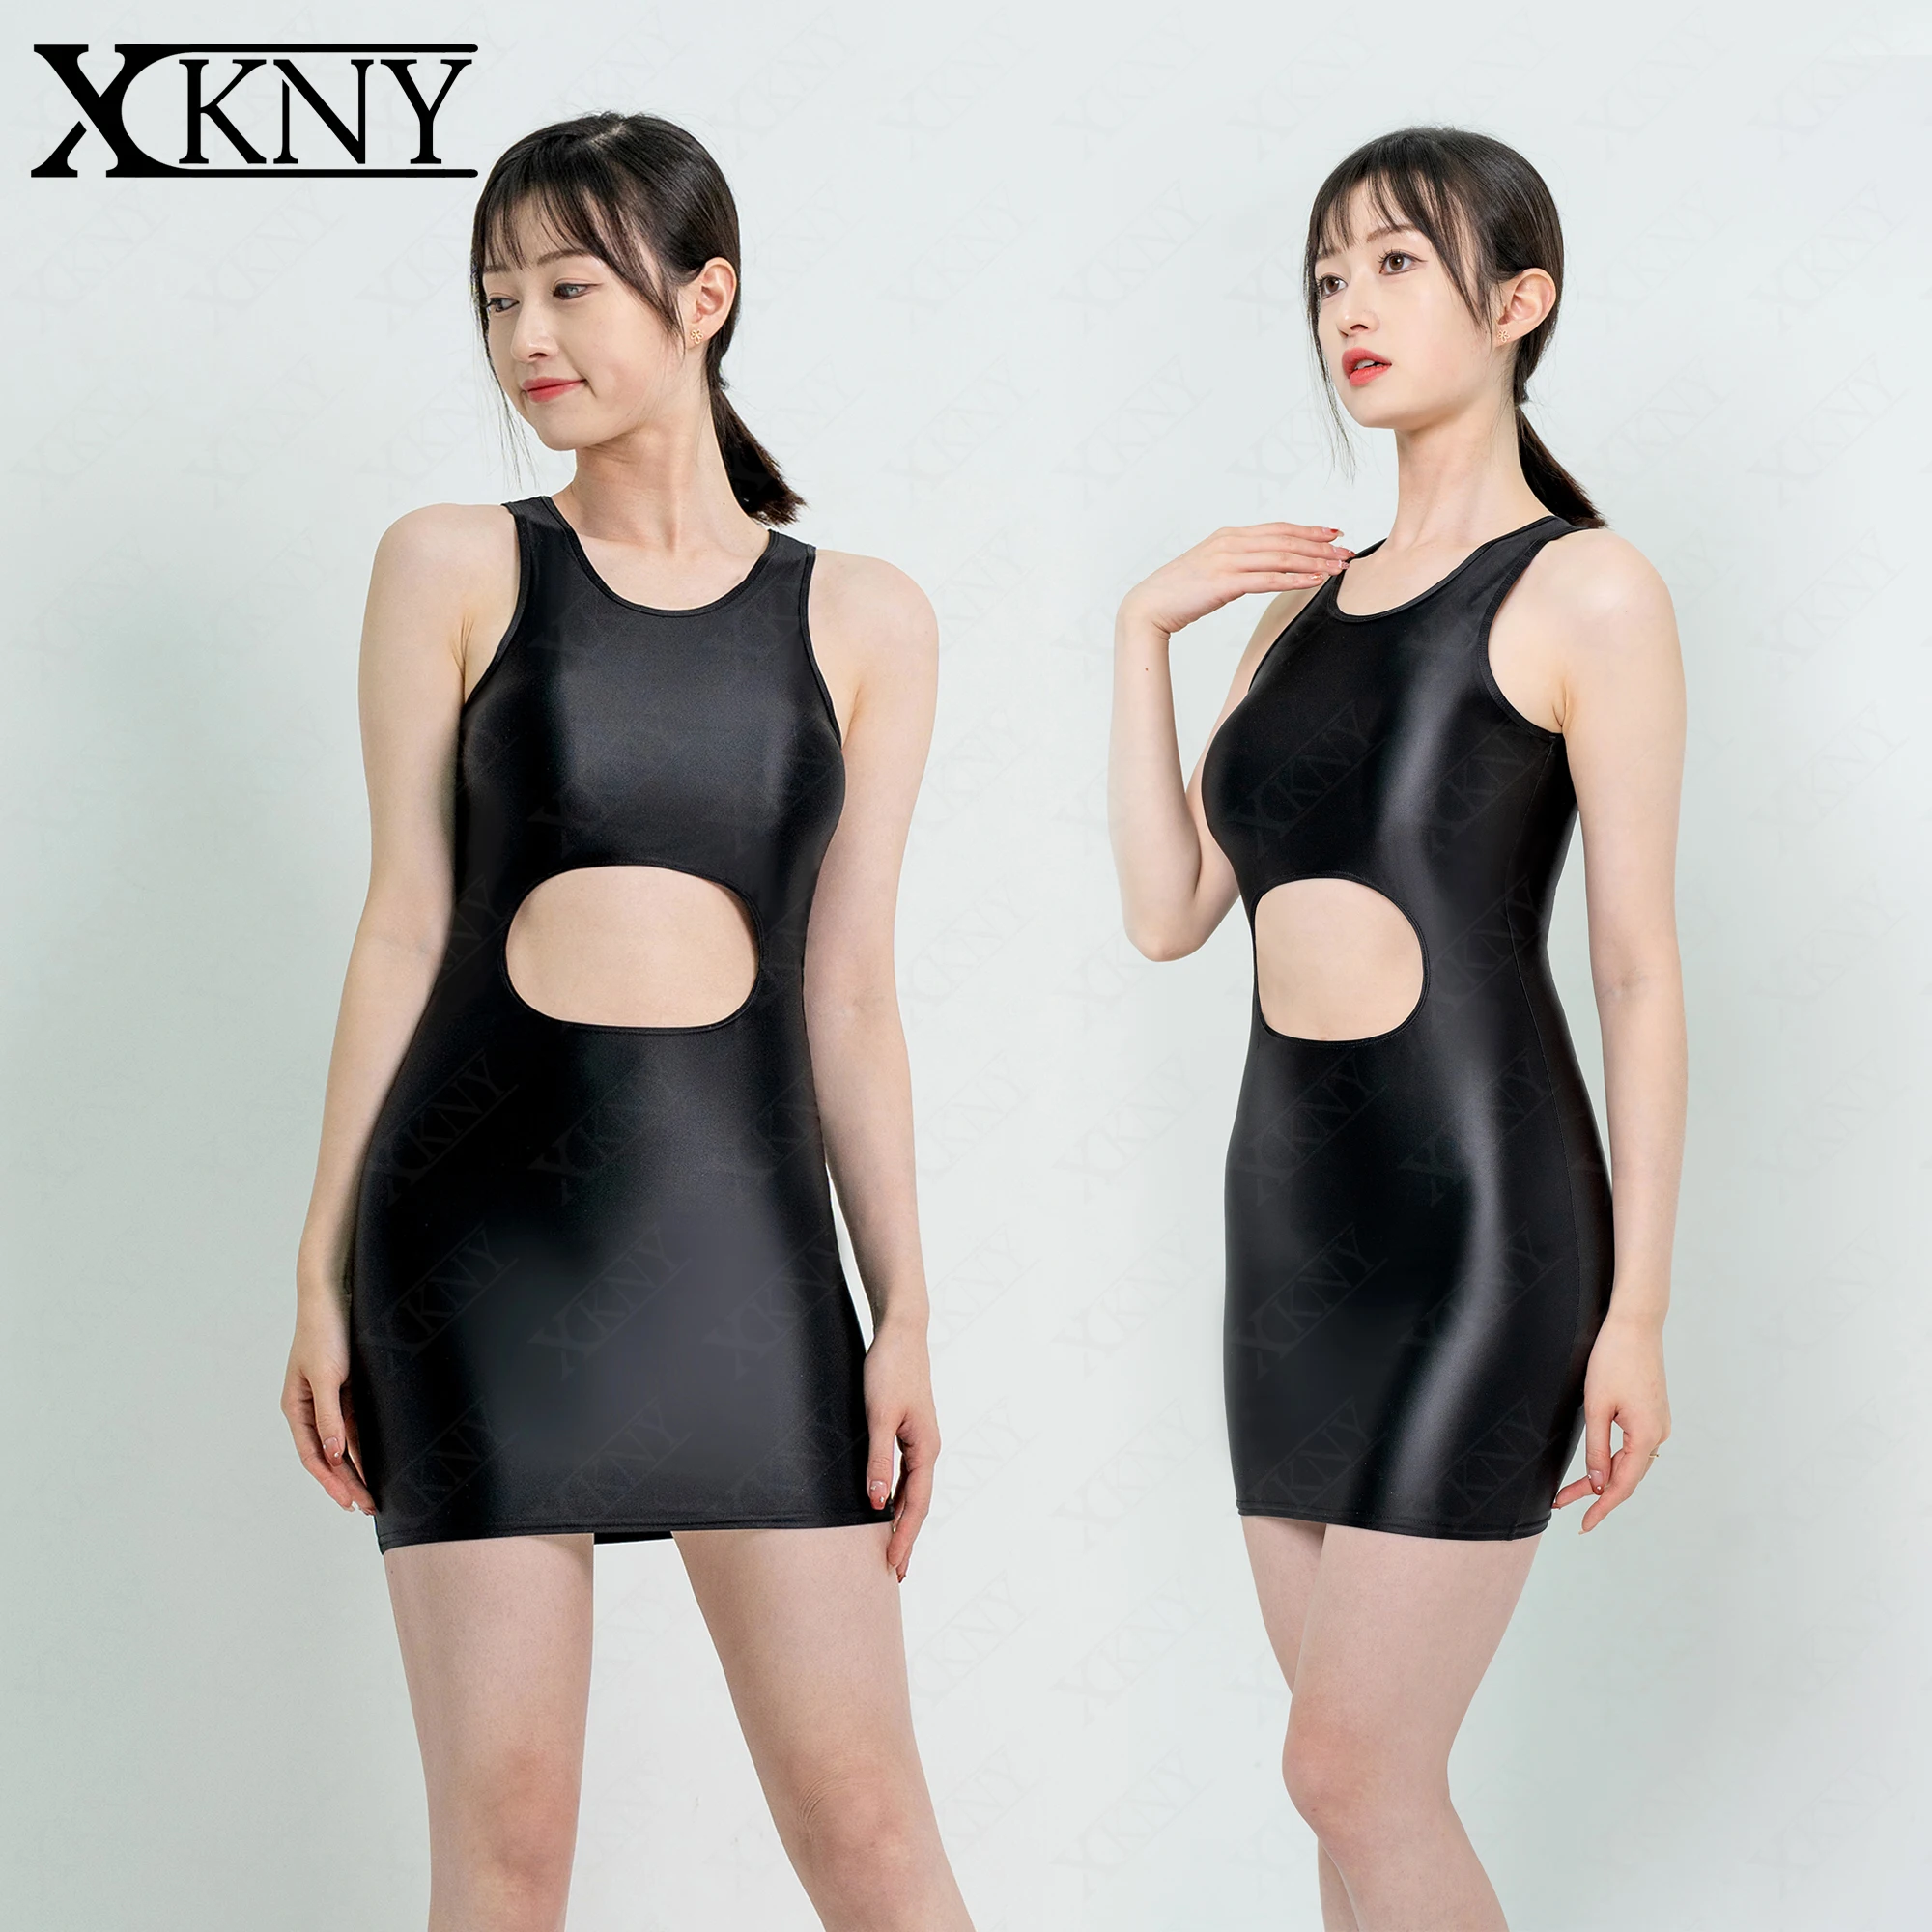 

XCKNY атласное глянцевое платье с запахом на бедрах, ажурная одноступенчатая юбка, шелковая облегающая юбка без рукавов, длинная юбка